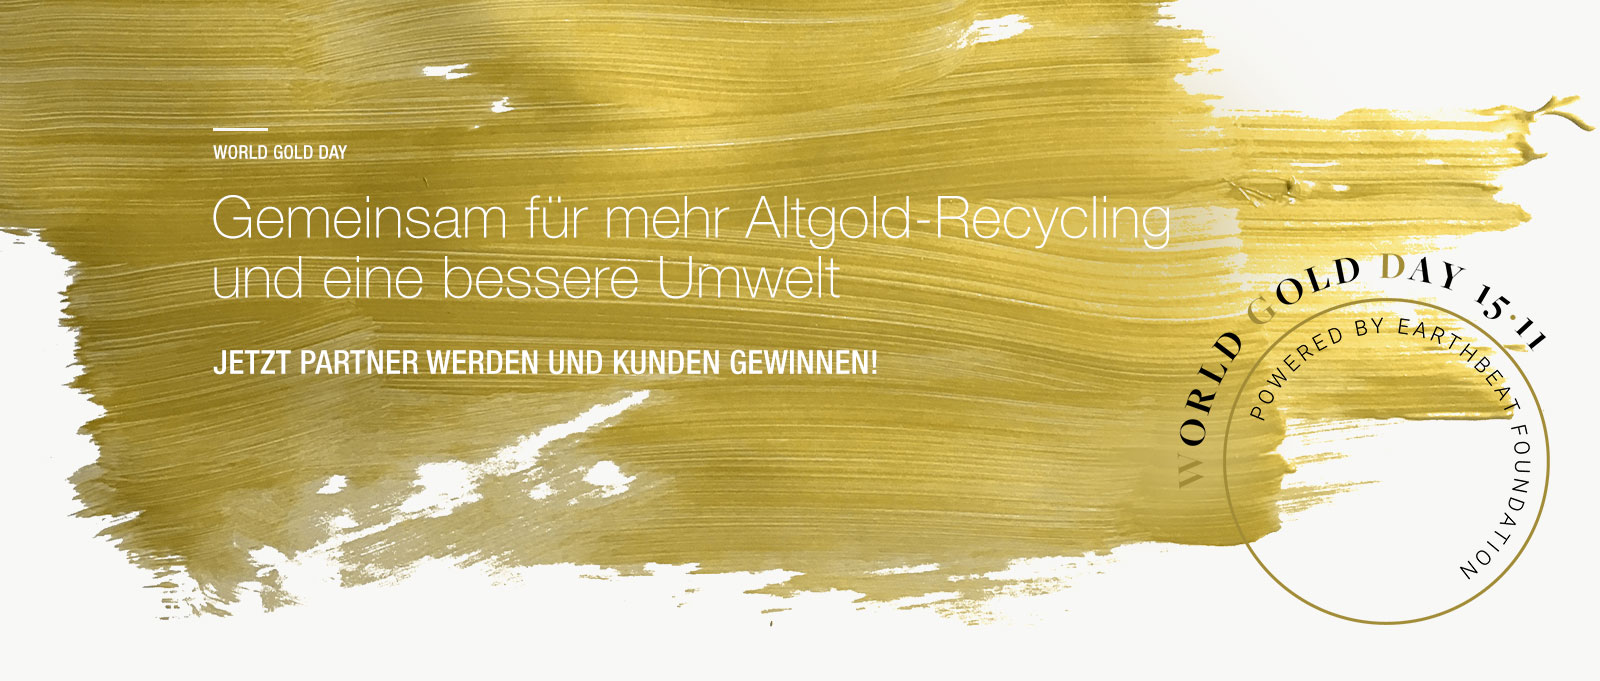 World Gold Day – Gemeinsam für mehr Altgold-Recycling und eine bessere Umwelt – Jetzt Partner werden und Kunden gewinnen!